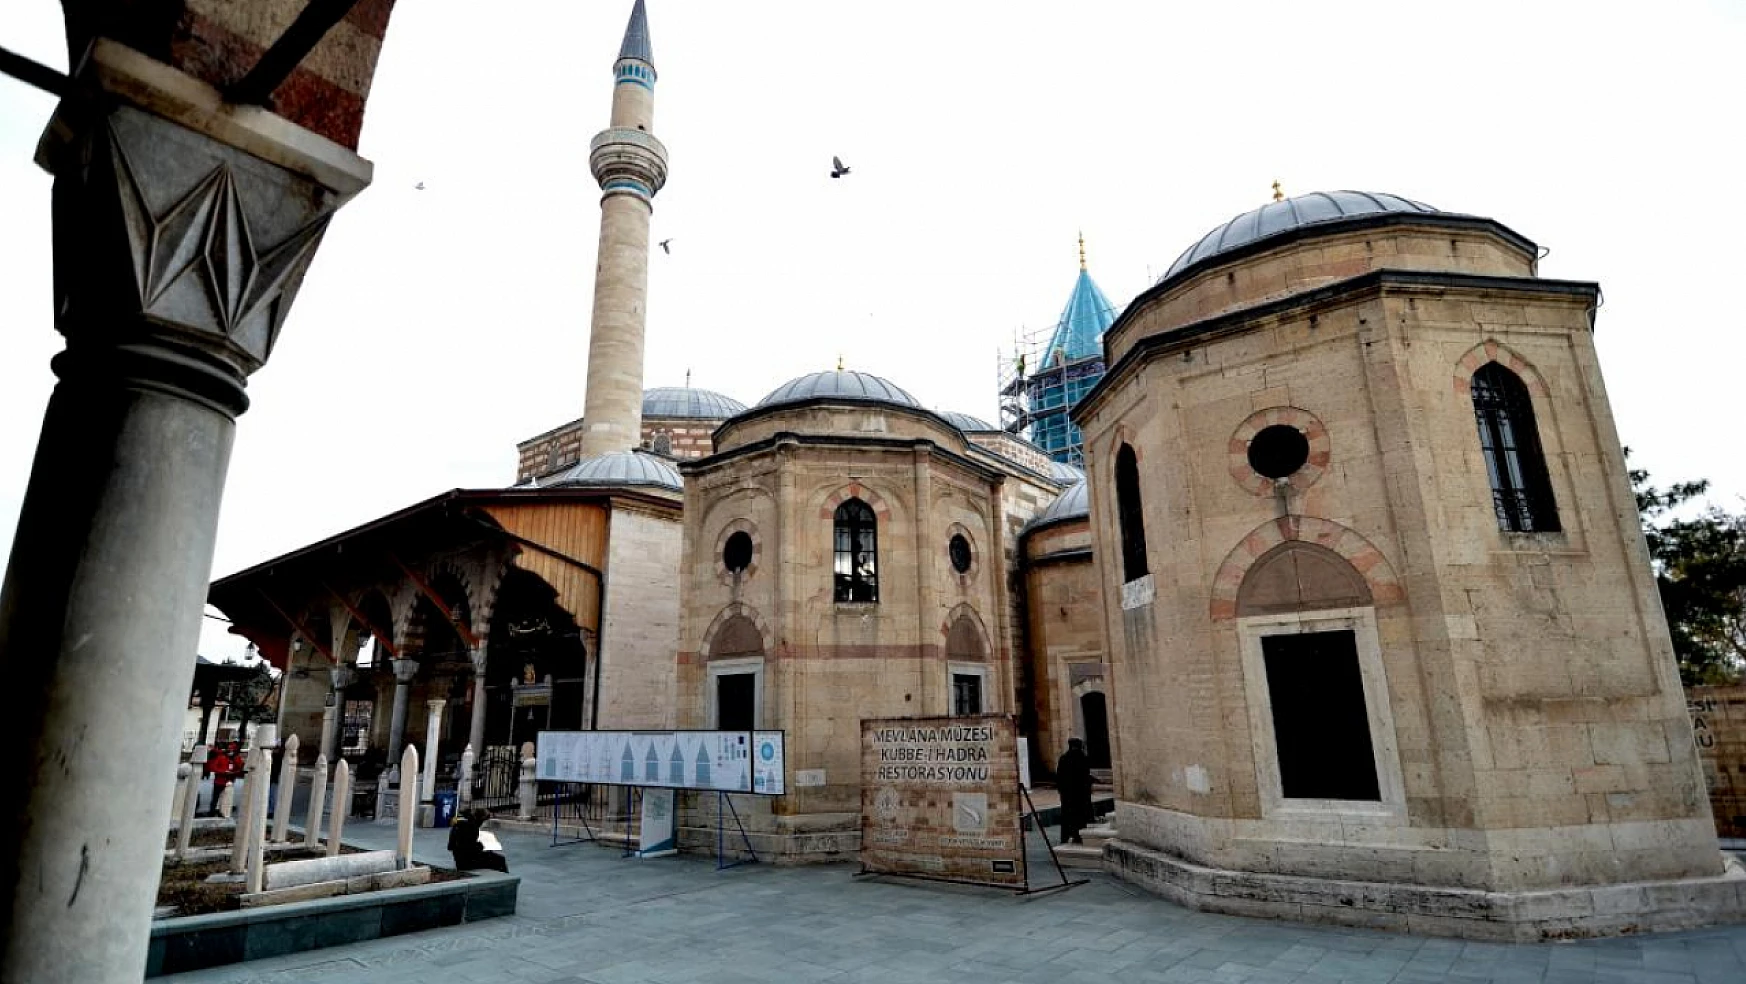 Hz. Mevlana'nın Konya'ya Gelişinin 795. Yılı Mevlana Meydanı'nda kutlanıyor